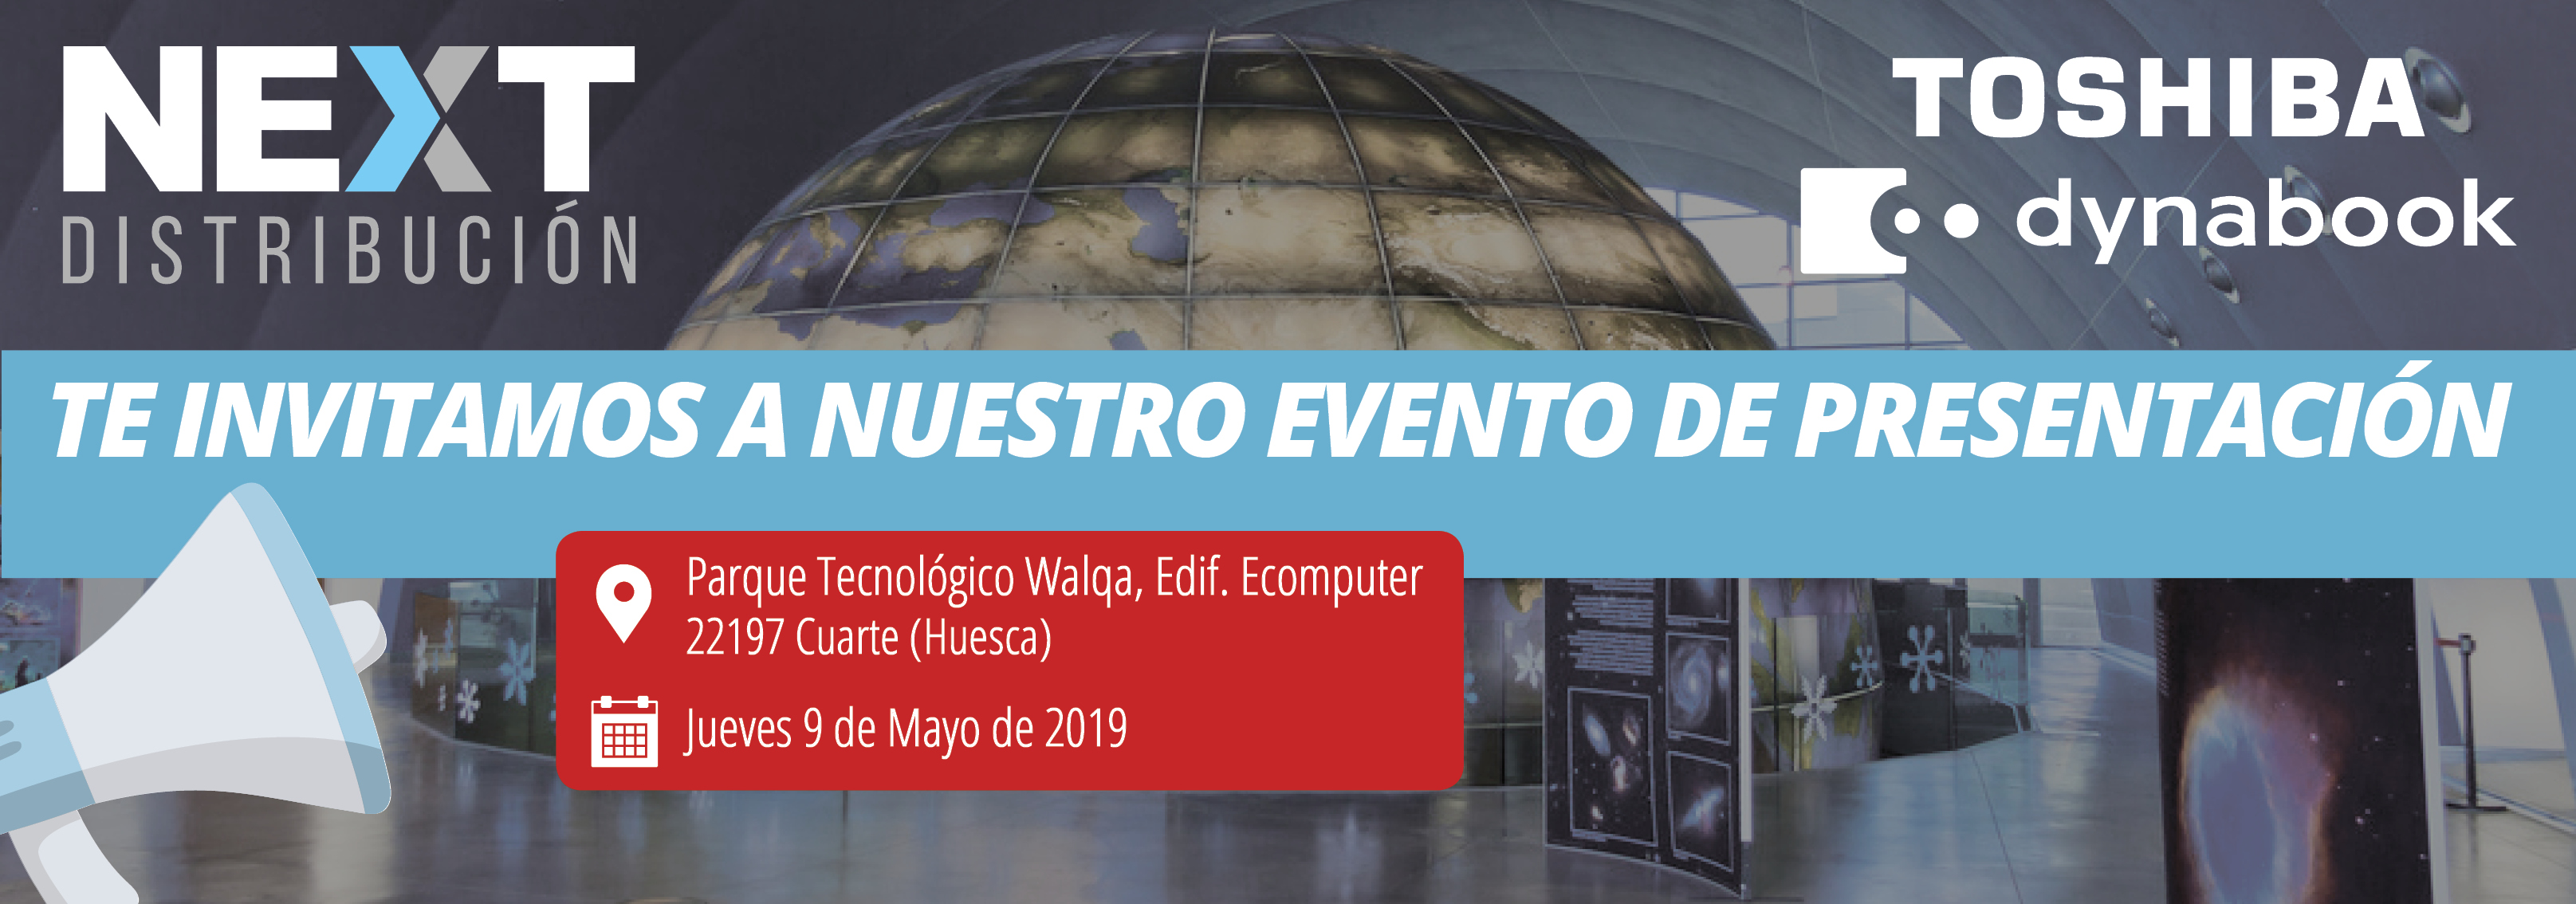 Next Distribución, Toshiba y Dynabook. Te invitamos a nuestro evento de presentación en el parque tecnológico Walqa, Edif. Ecomputer 22197 Cuarte (Huesca). Jueves 9 de Mayo de 2019